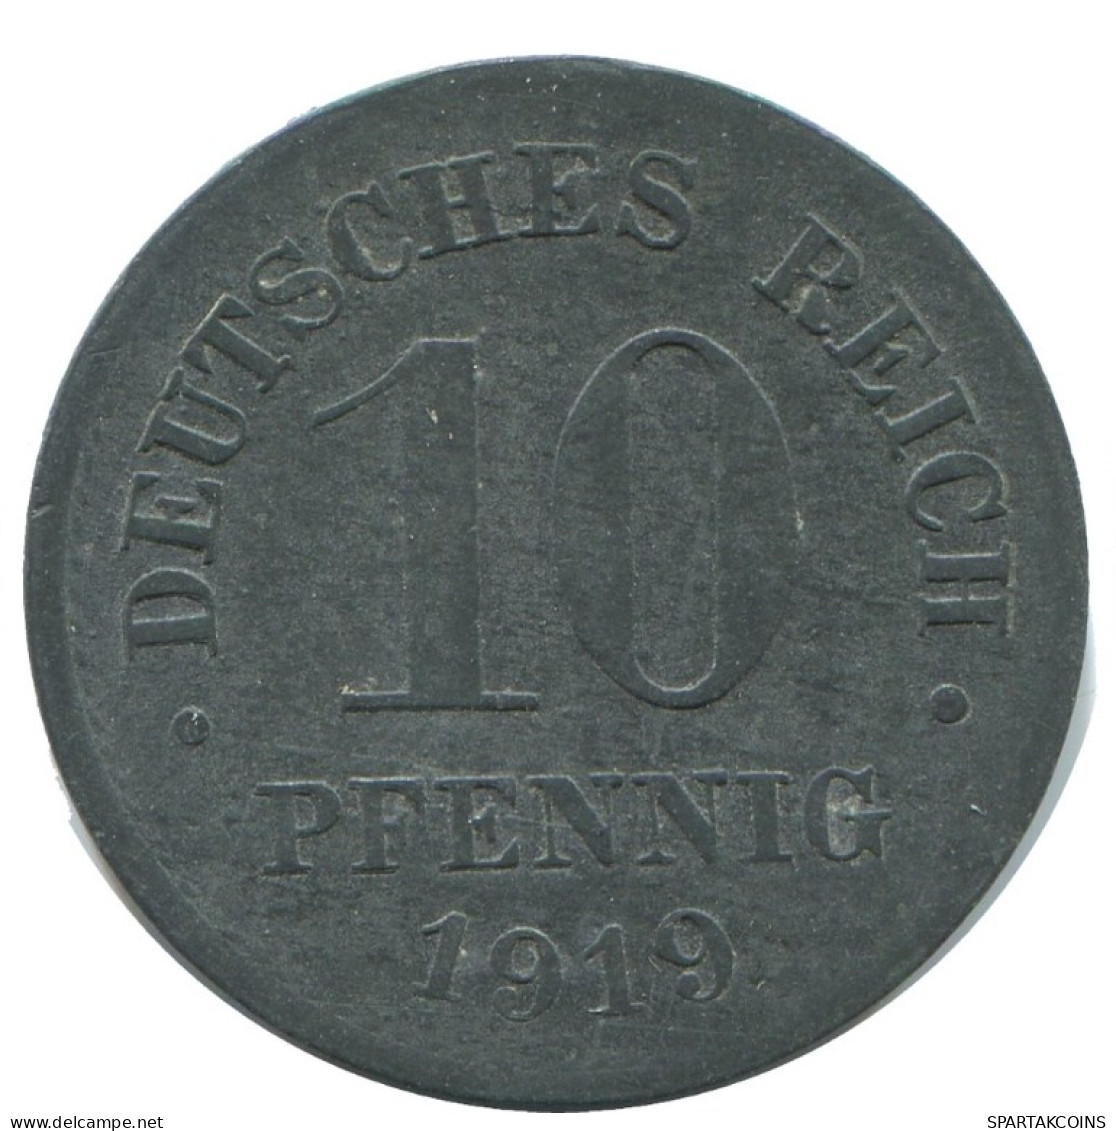 10 PFENNIG 1919 GERMANY Coin #AD529.9.U.A - 10 Renten- & 10 Reichspfennig